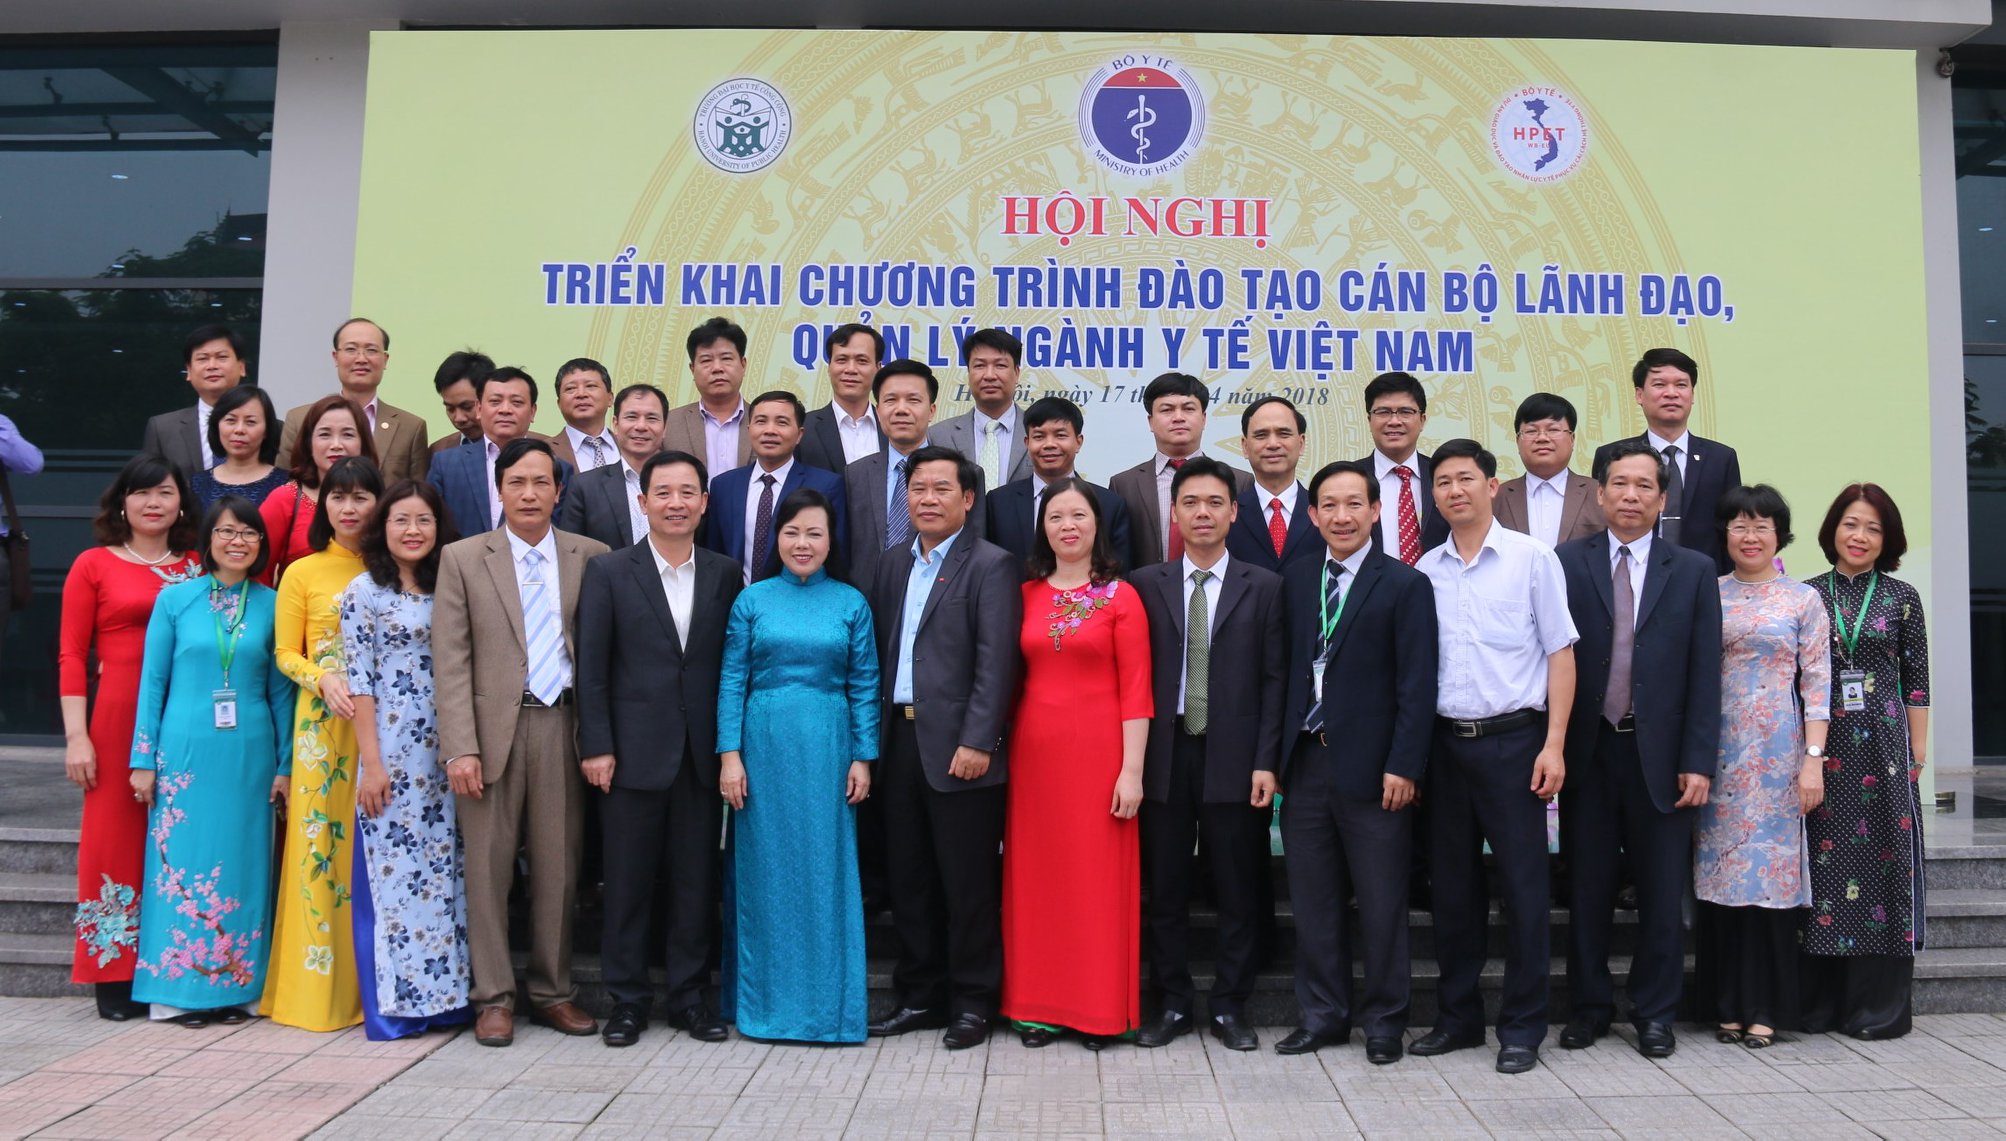 Hội nghị Triển khai Chương trình đào tạo cán bộ lãnh đạo, quản lý ngành Y tế Việt Nam